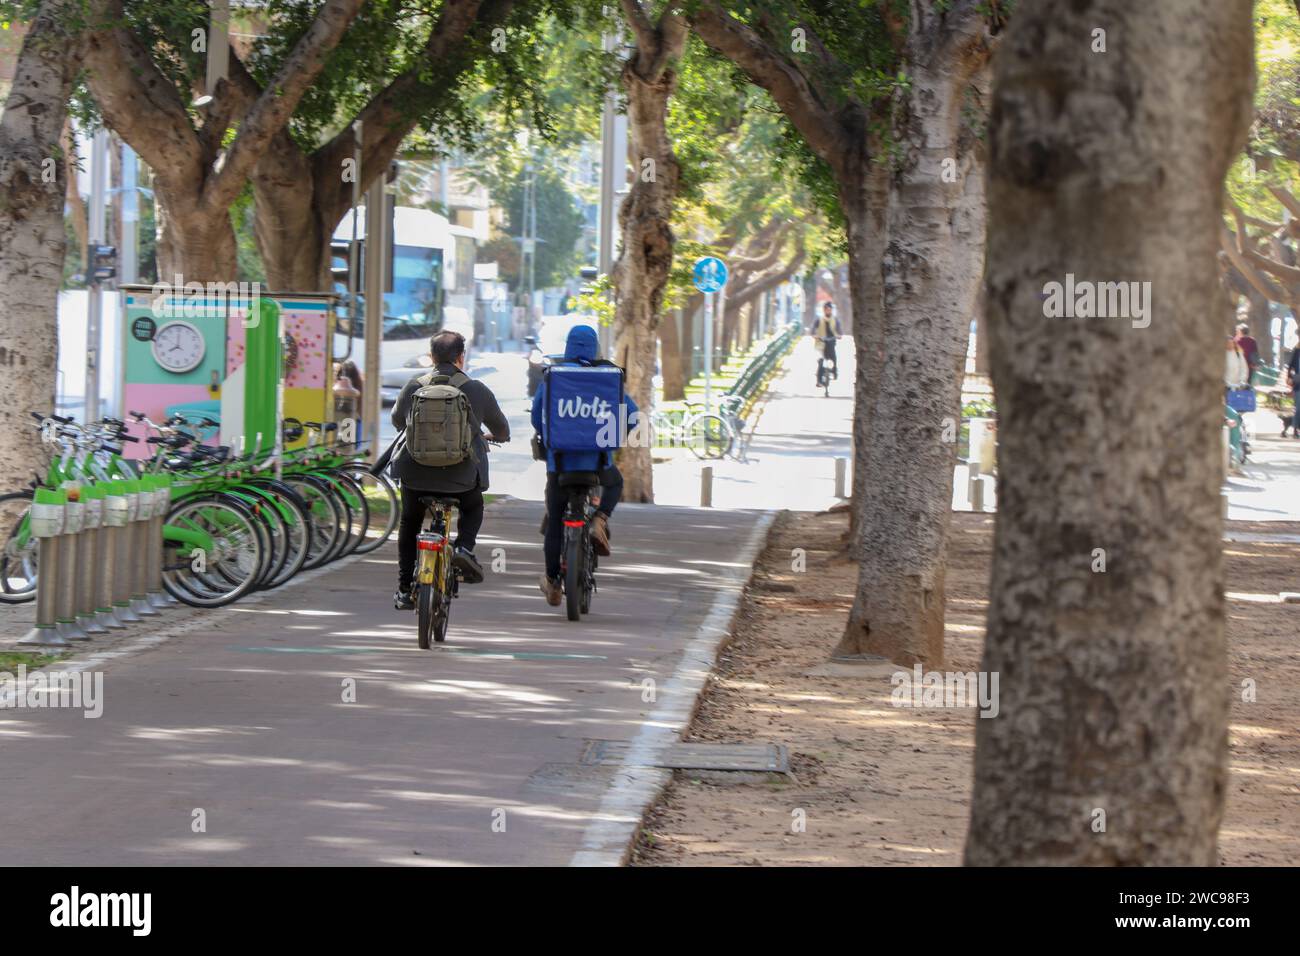 Un cycliste et un livreur roulant sur une piste cyclable dans la ville. Les coureurs sont photographiés de derrière Banque D'Images